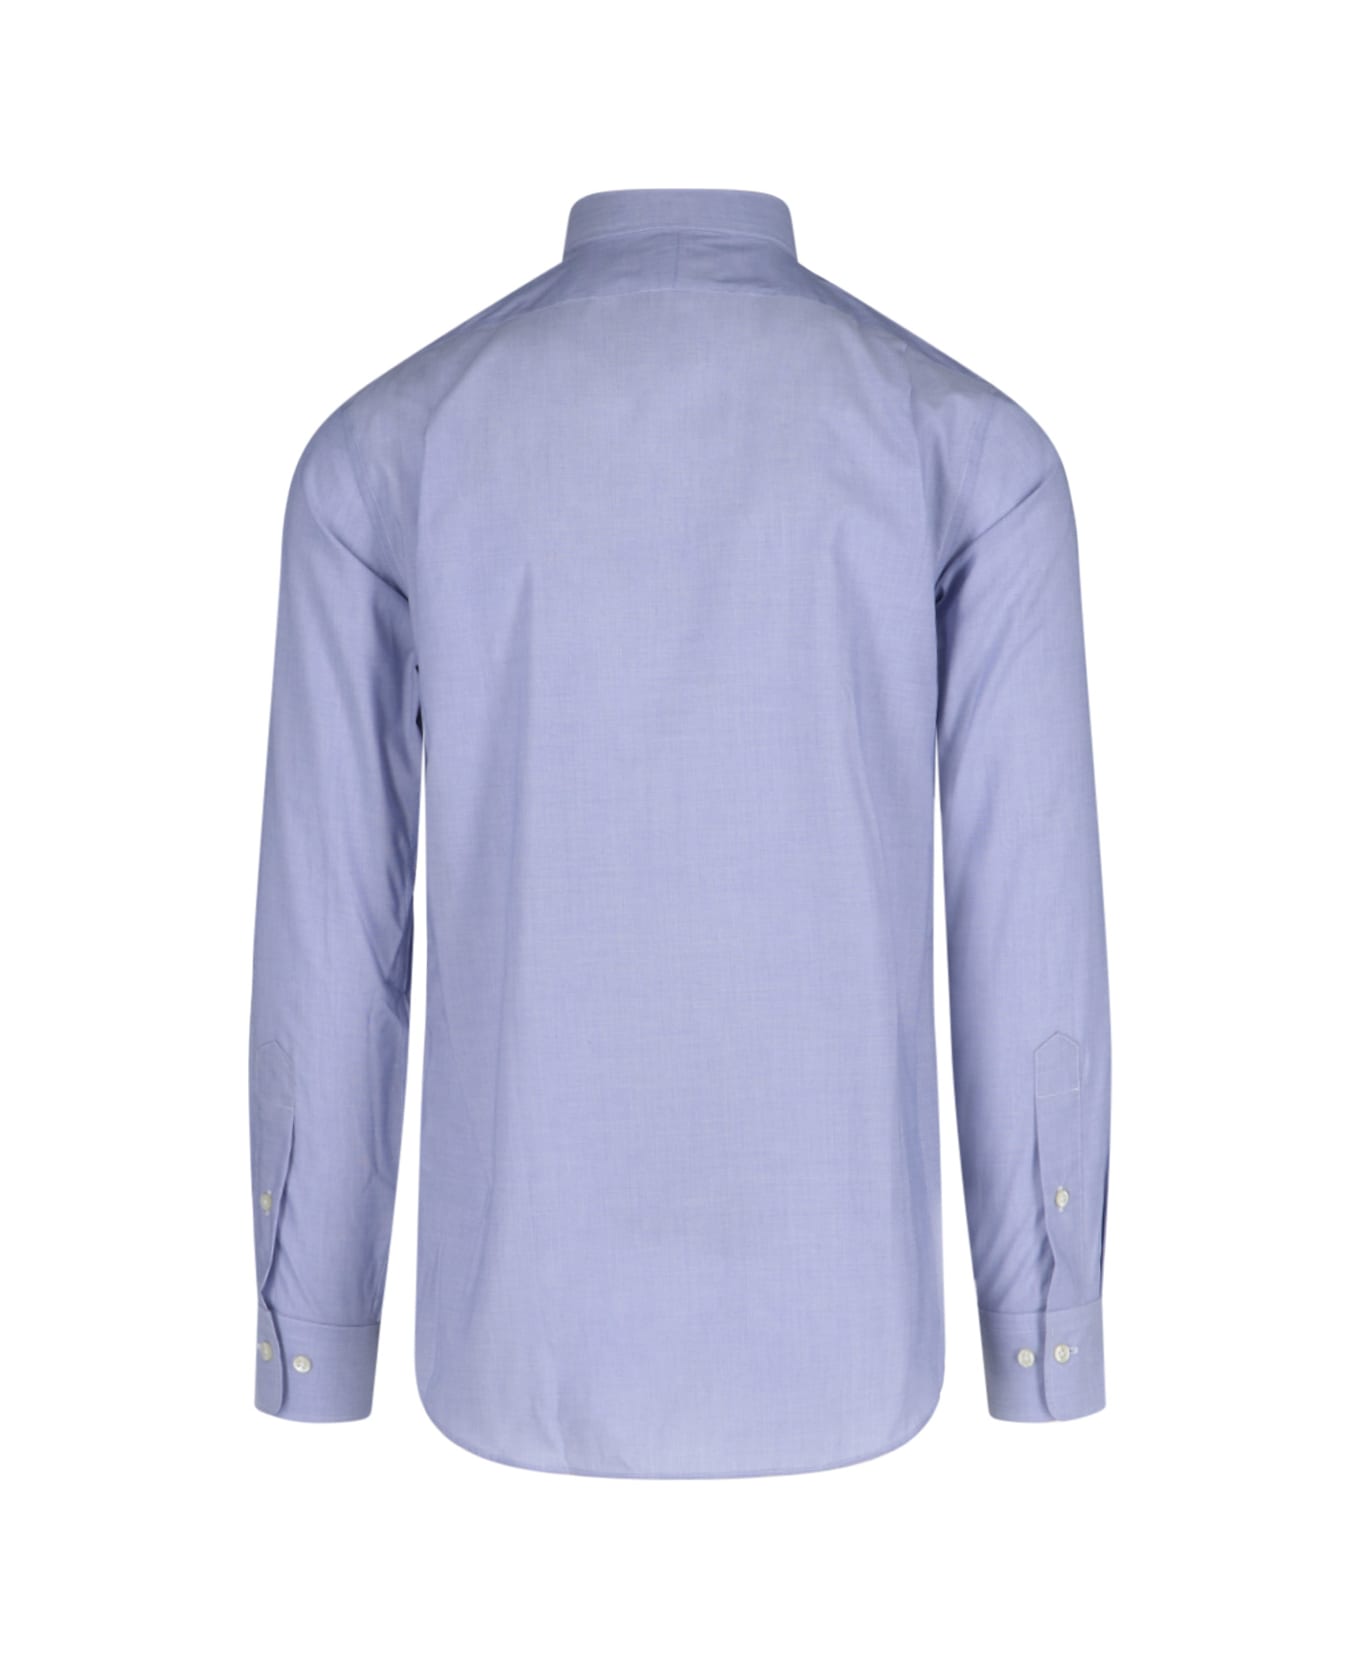 Polo Ralph Lauren Classic Logo Shirt - Light Blue